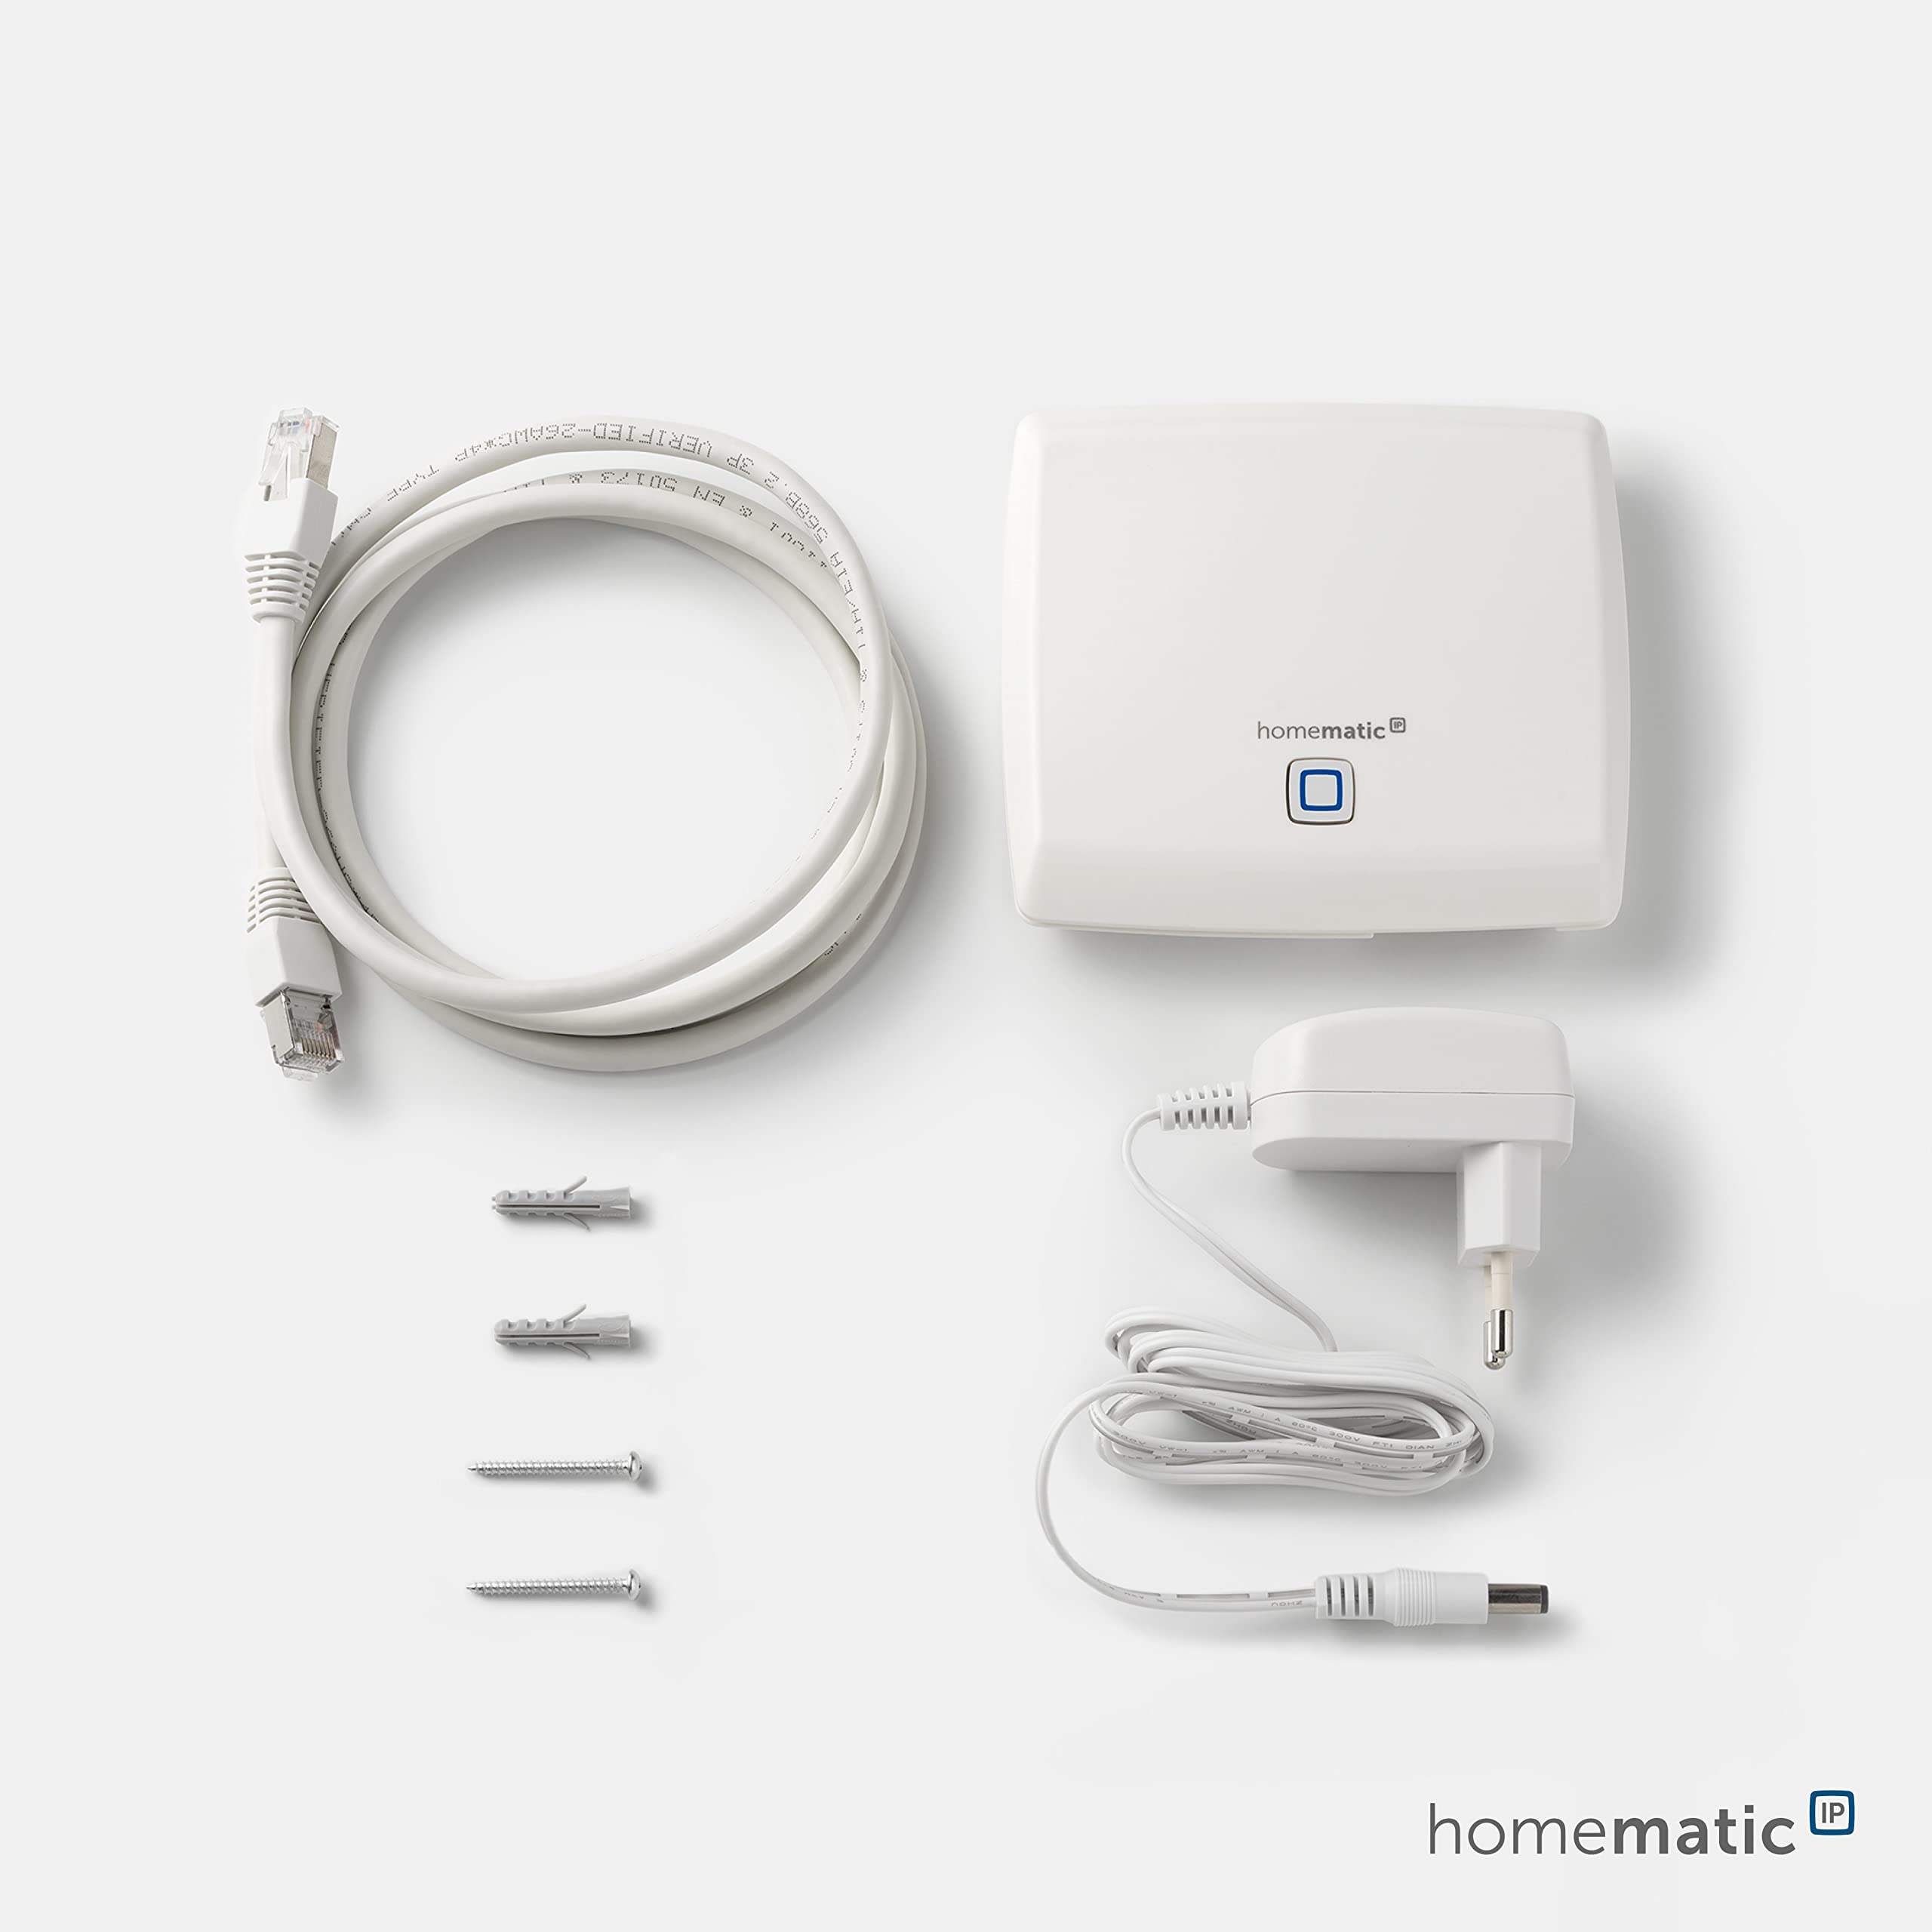 Homematic IP Access Point, Smart Home Gateway, Basisstation mit kostenloser App und Sprachsteuerung über Amazon Alexa, 140887A0